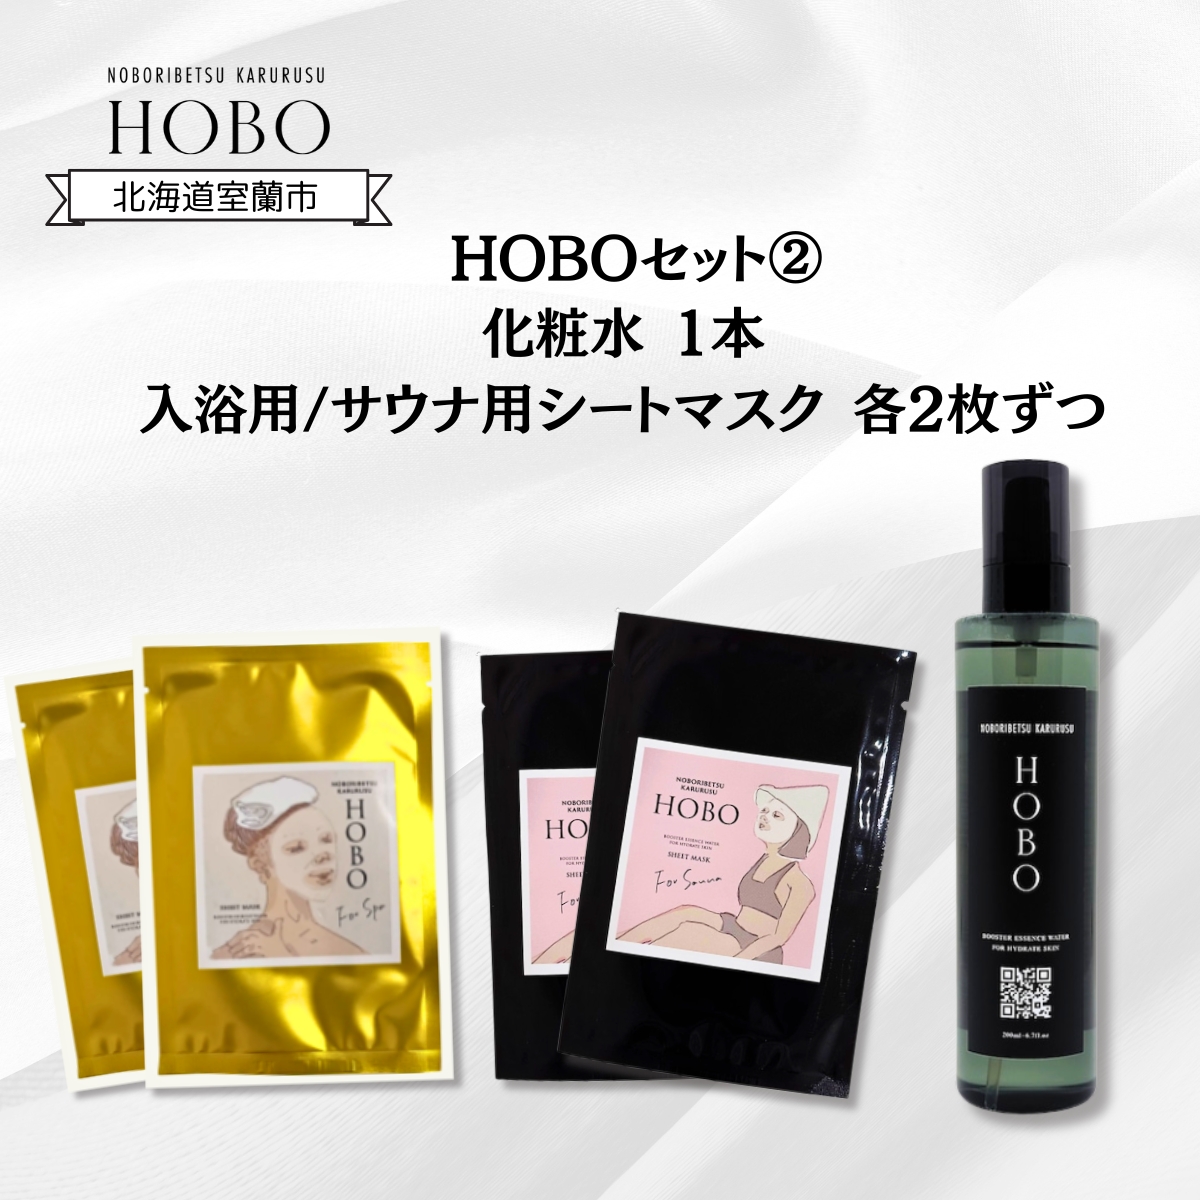 HOBOセット(2)【 化粧水 1本 + 入浴用 / サウナ用 シート マスク 各2枚ずつ 】 MROJ007